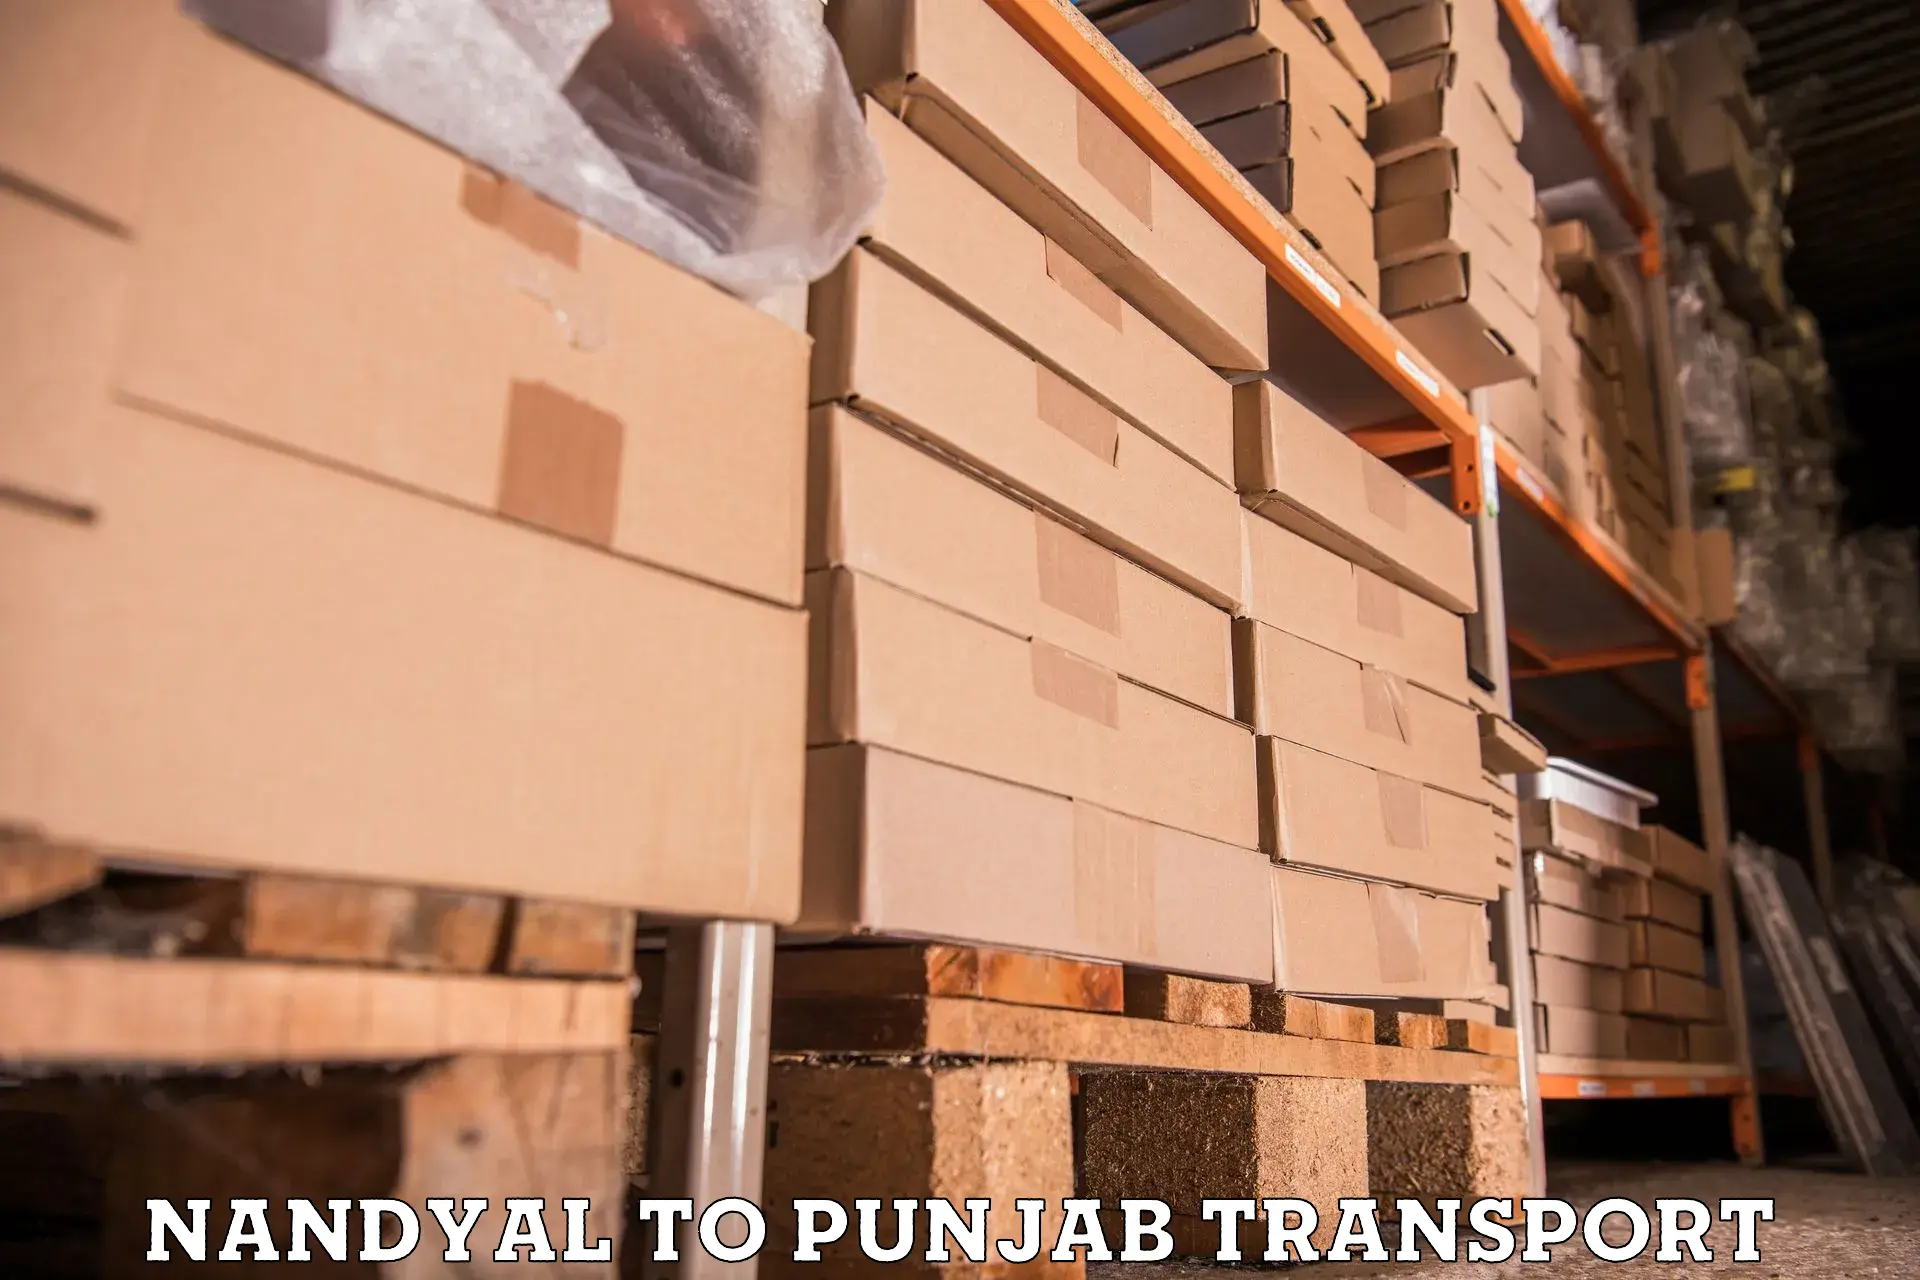 Furniture transport service Nandyal to Rampura Phul